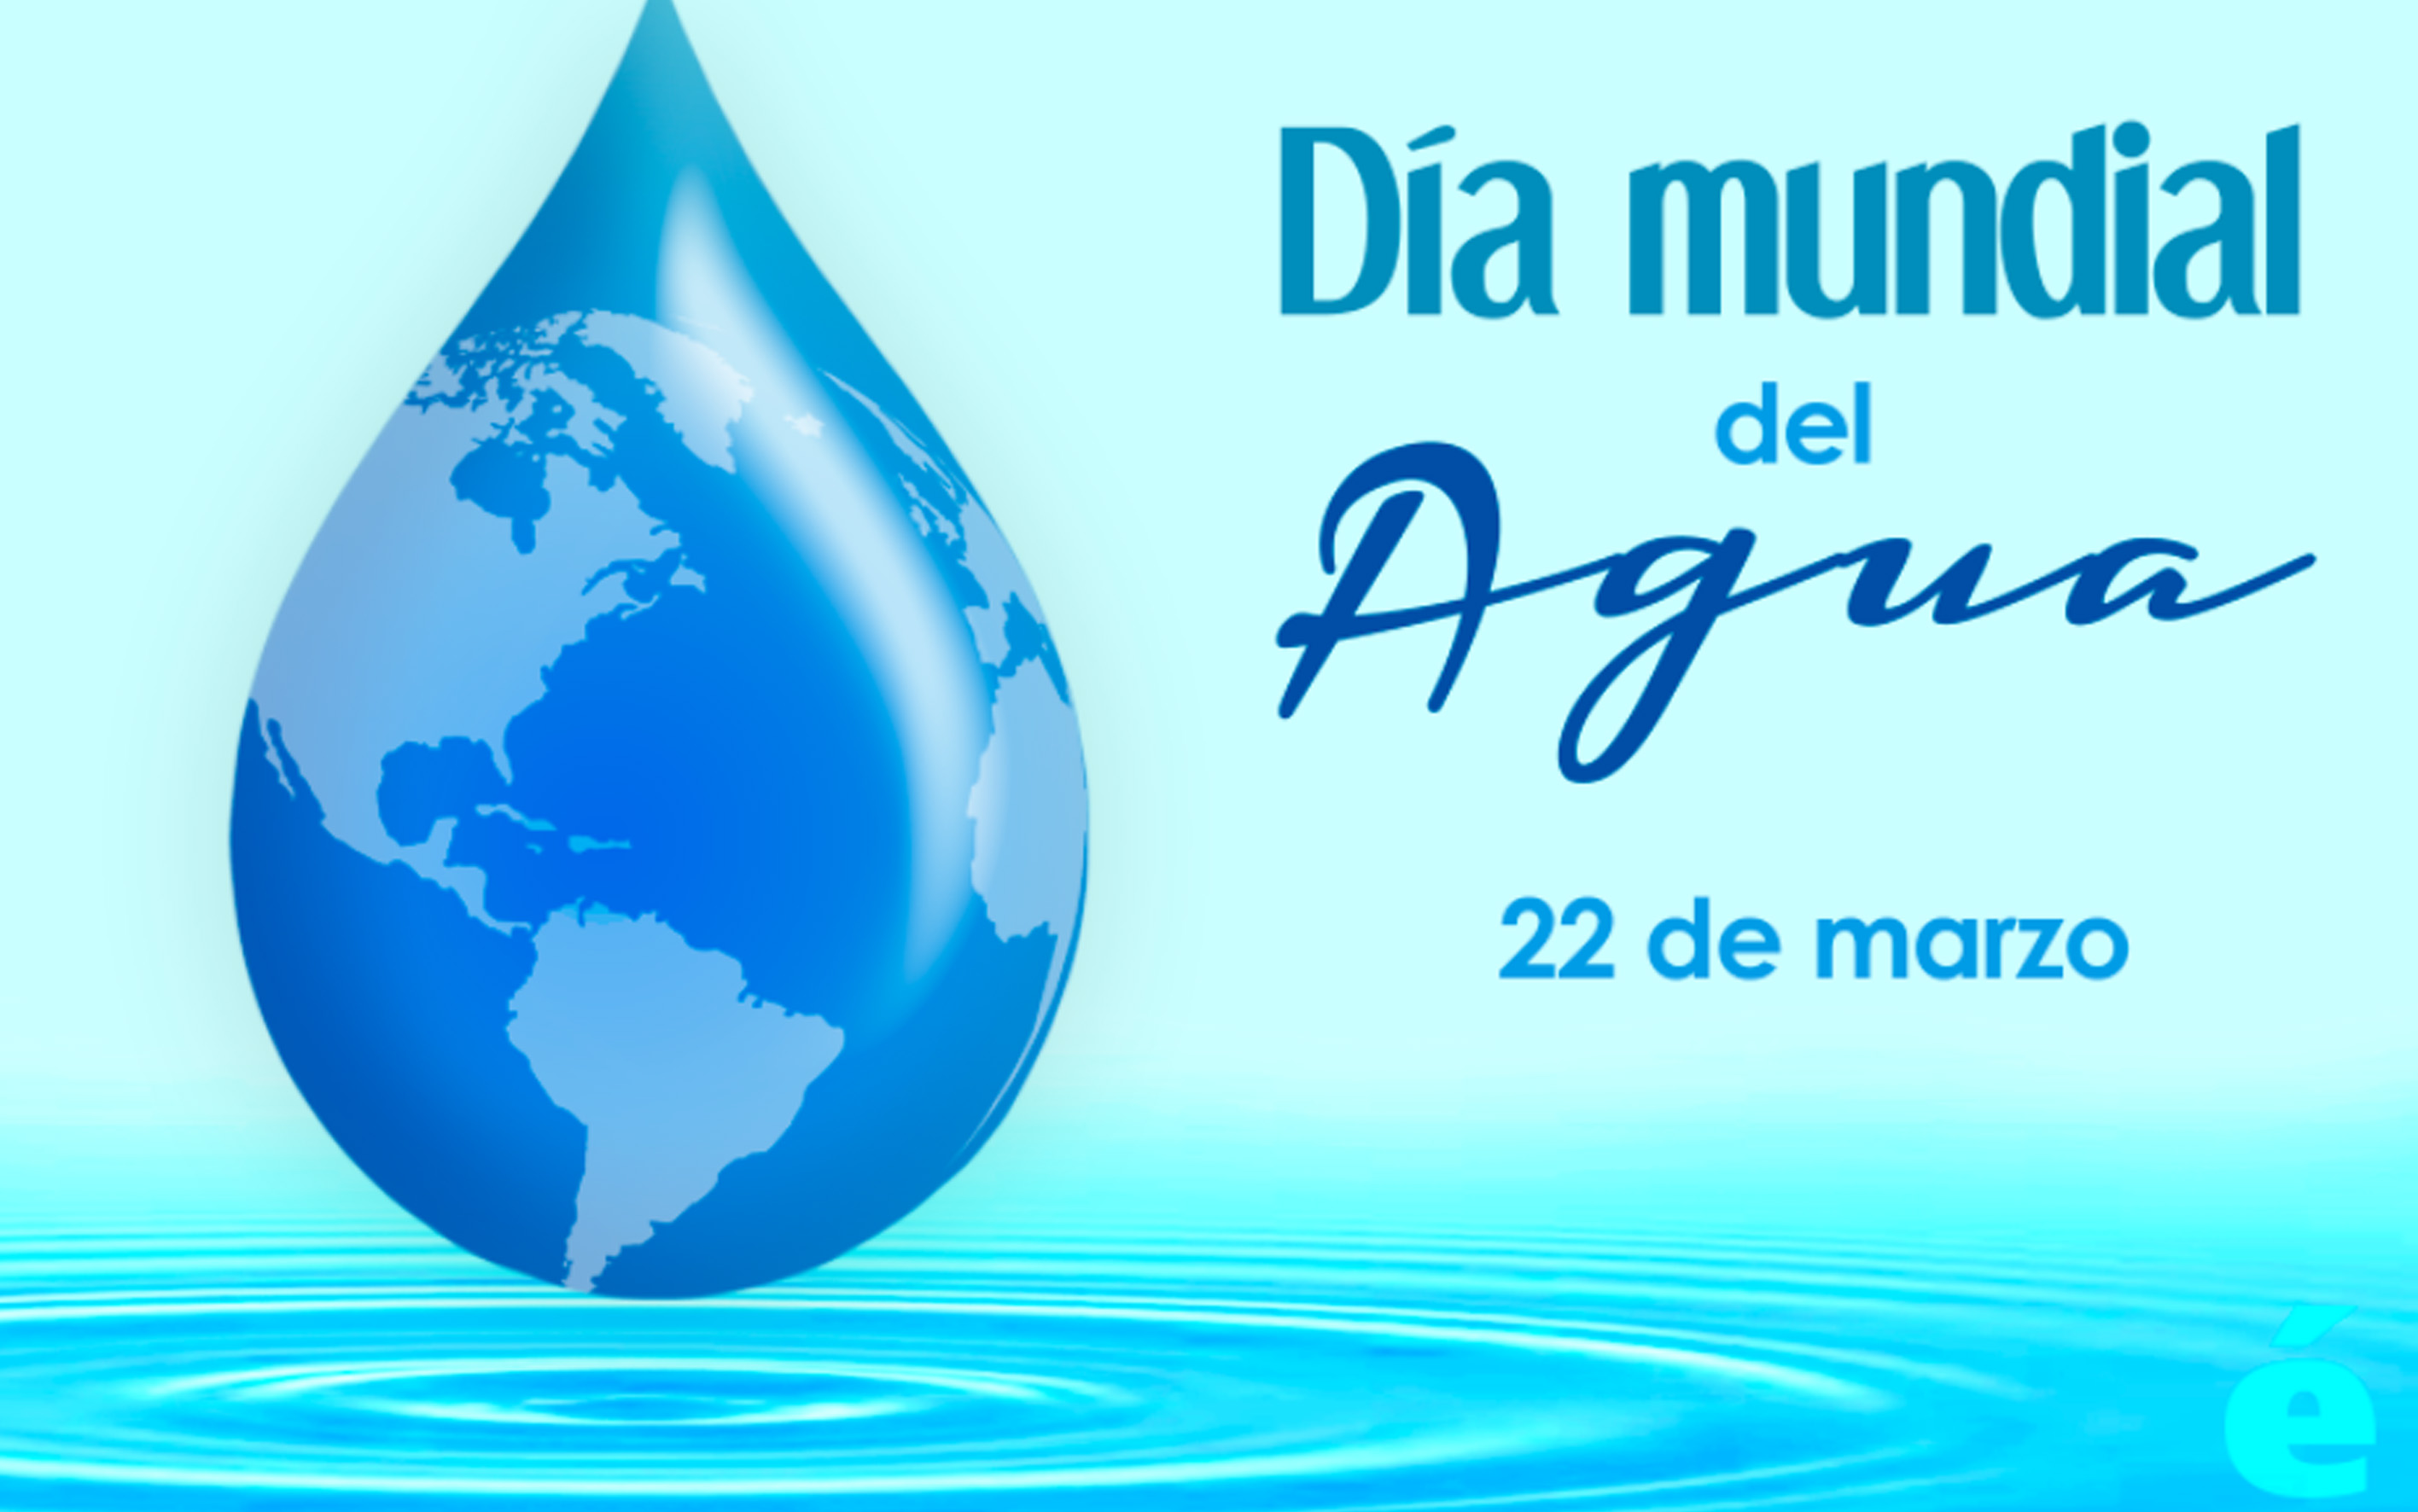 Día mundial del agua 